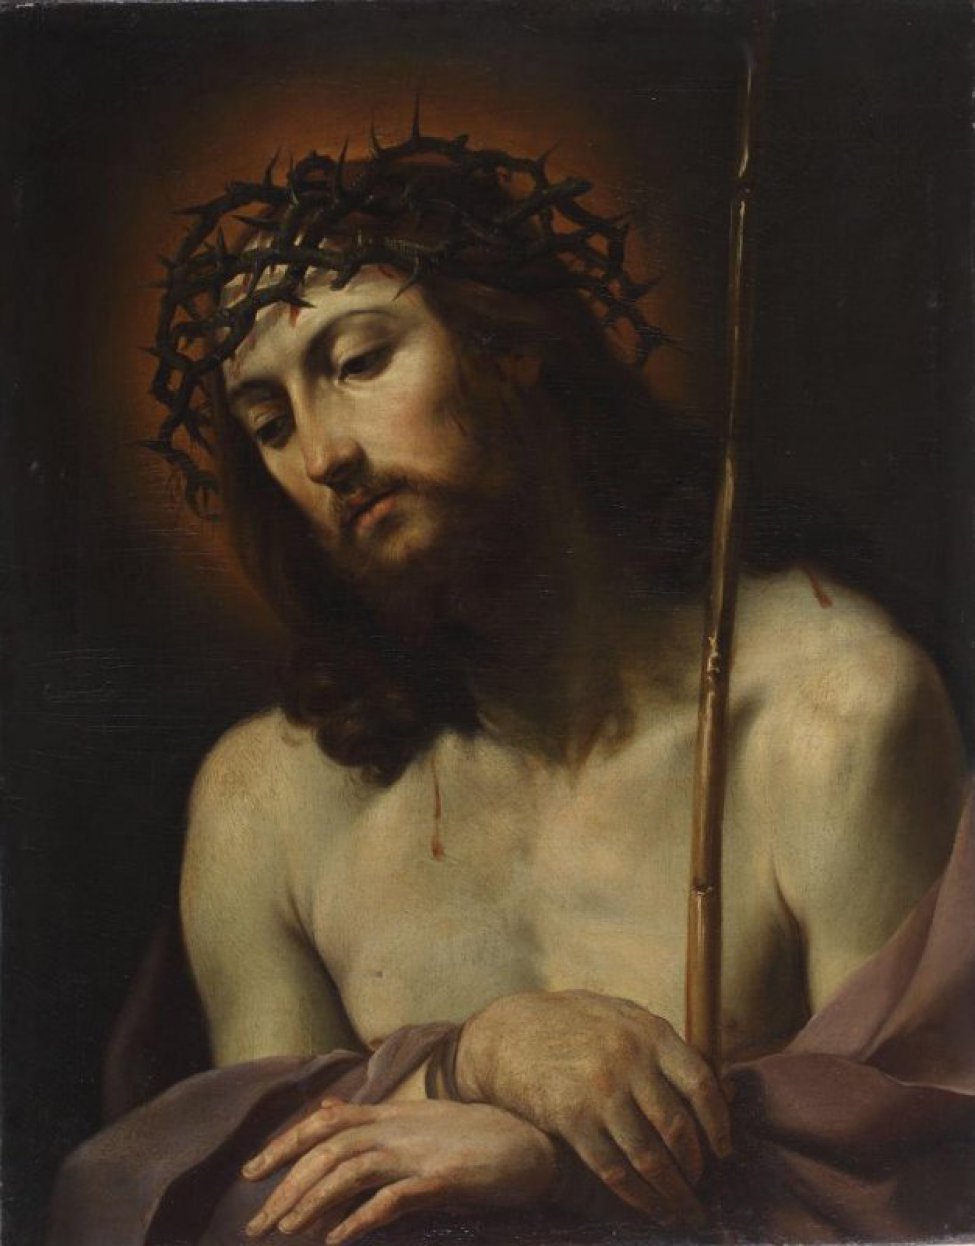 Погрудное изображение на темном фоне обнаженного Христа в терновом венце со связанными руками, склоненной влево головой, длинными волосами.